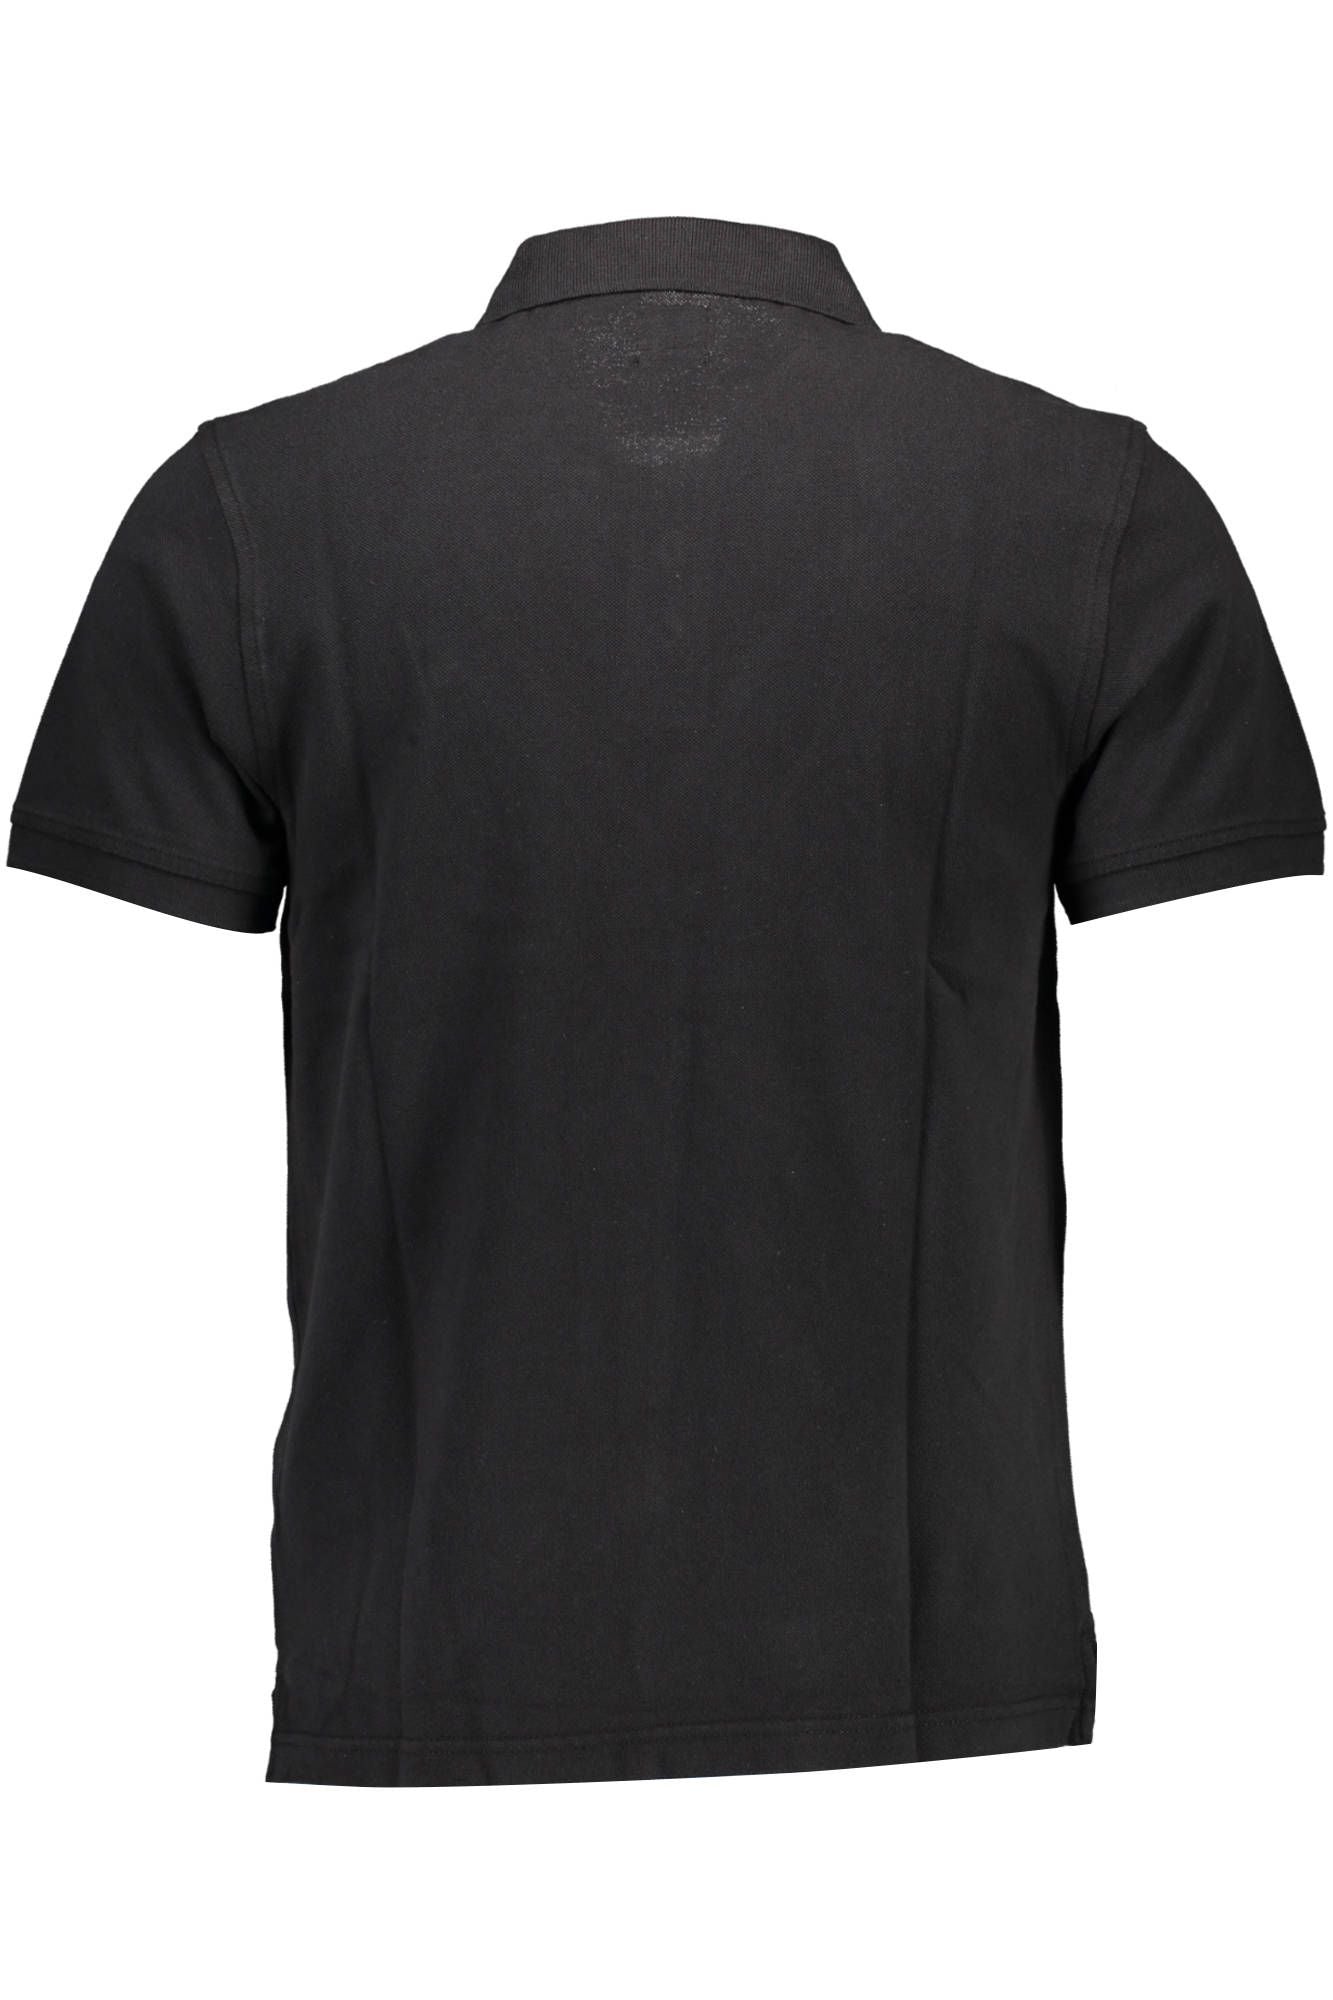 Levi's Sleek Cotton Polo Shirt with Logo